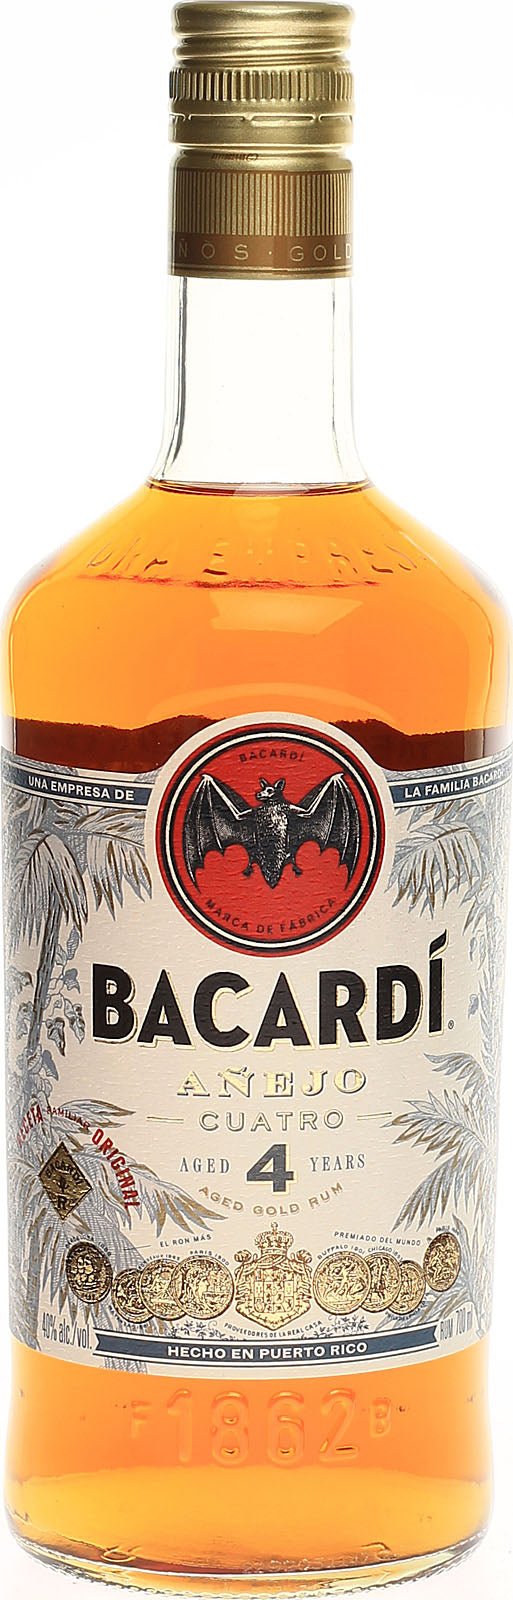 Bacardi Anejo 40% 0,7 ltr. - AllSpirits